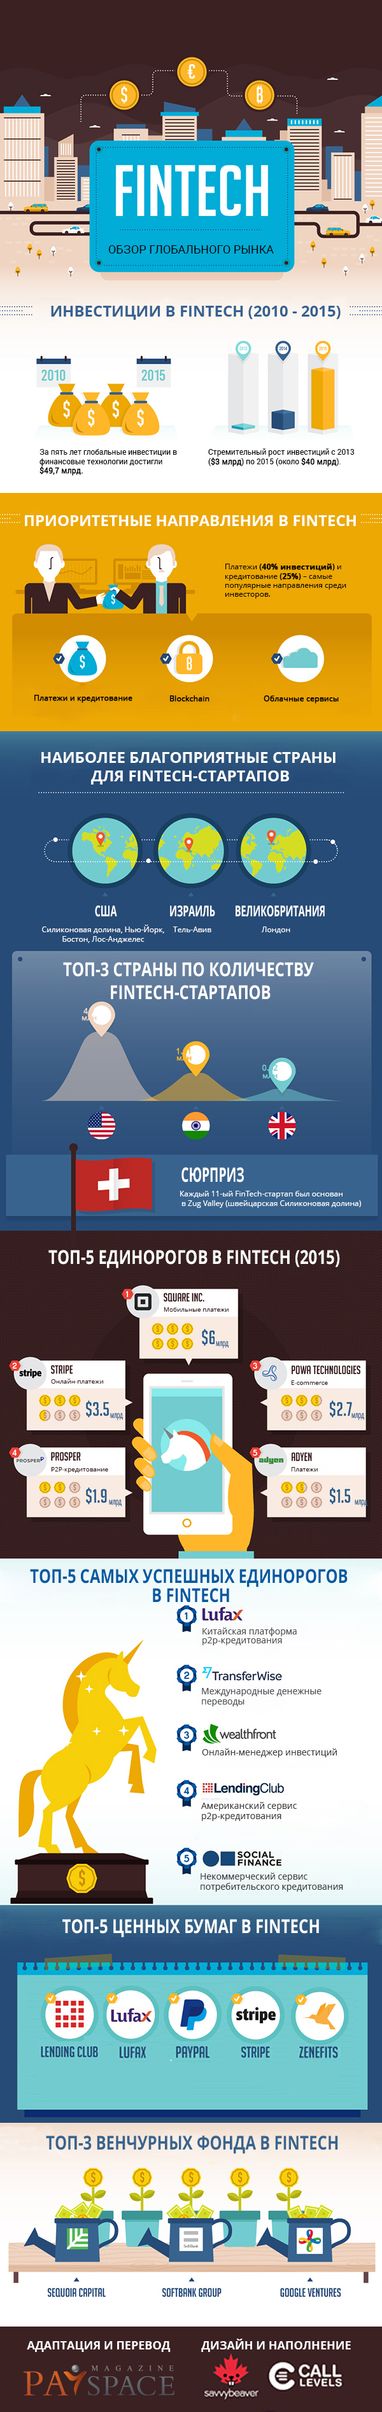 Розвиток глобального ринку FinTech (інфографіка)